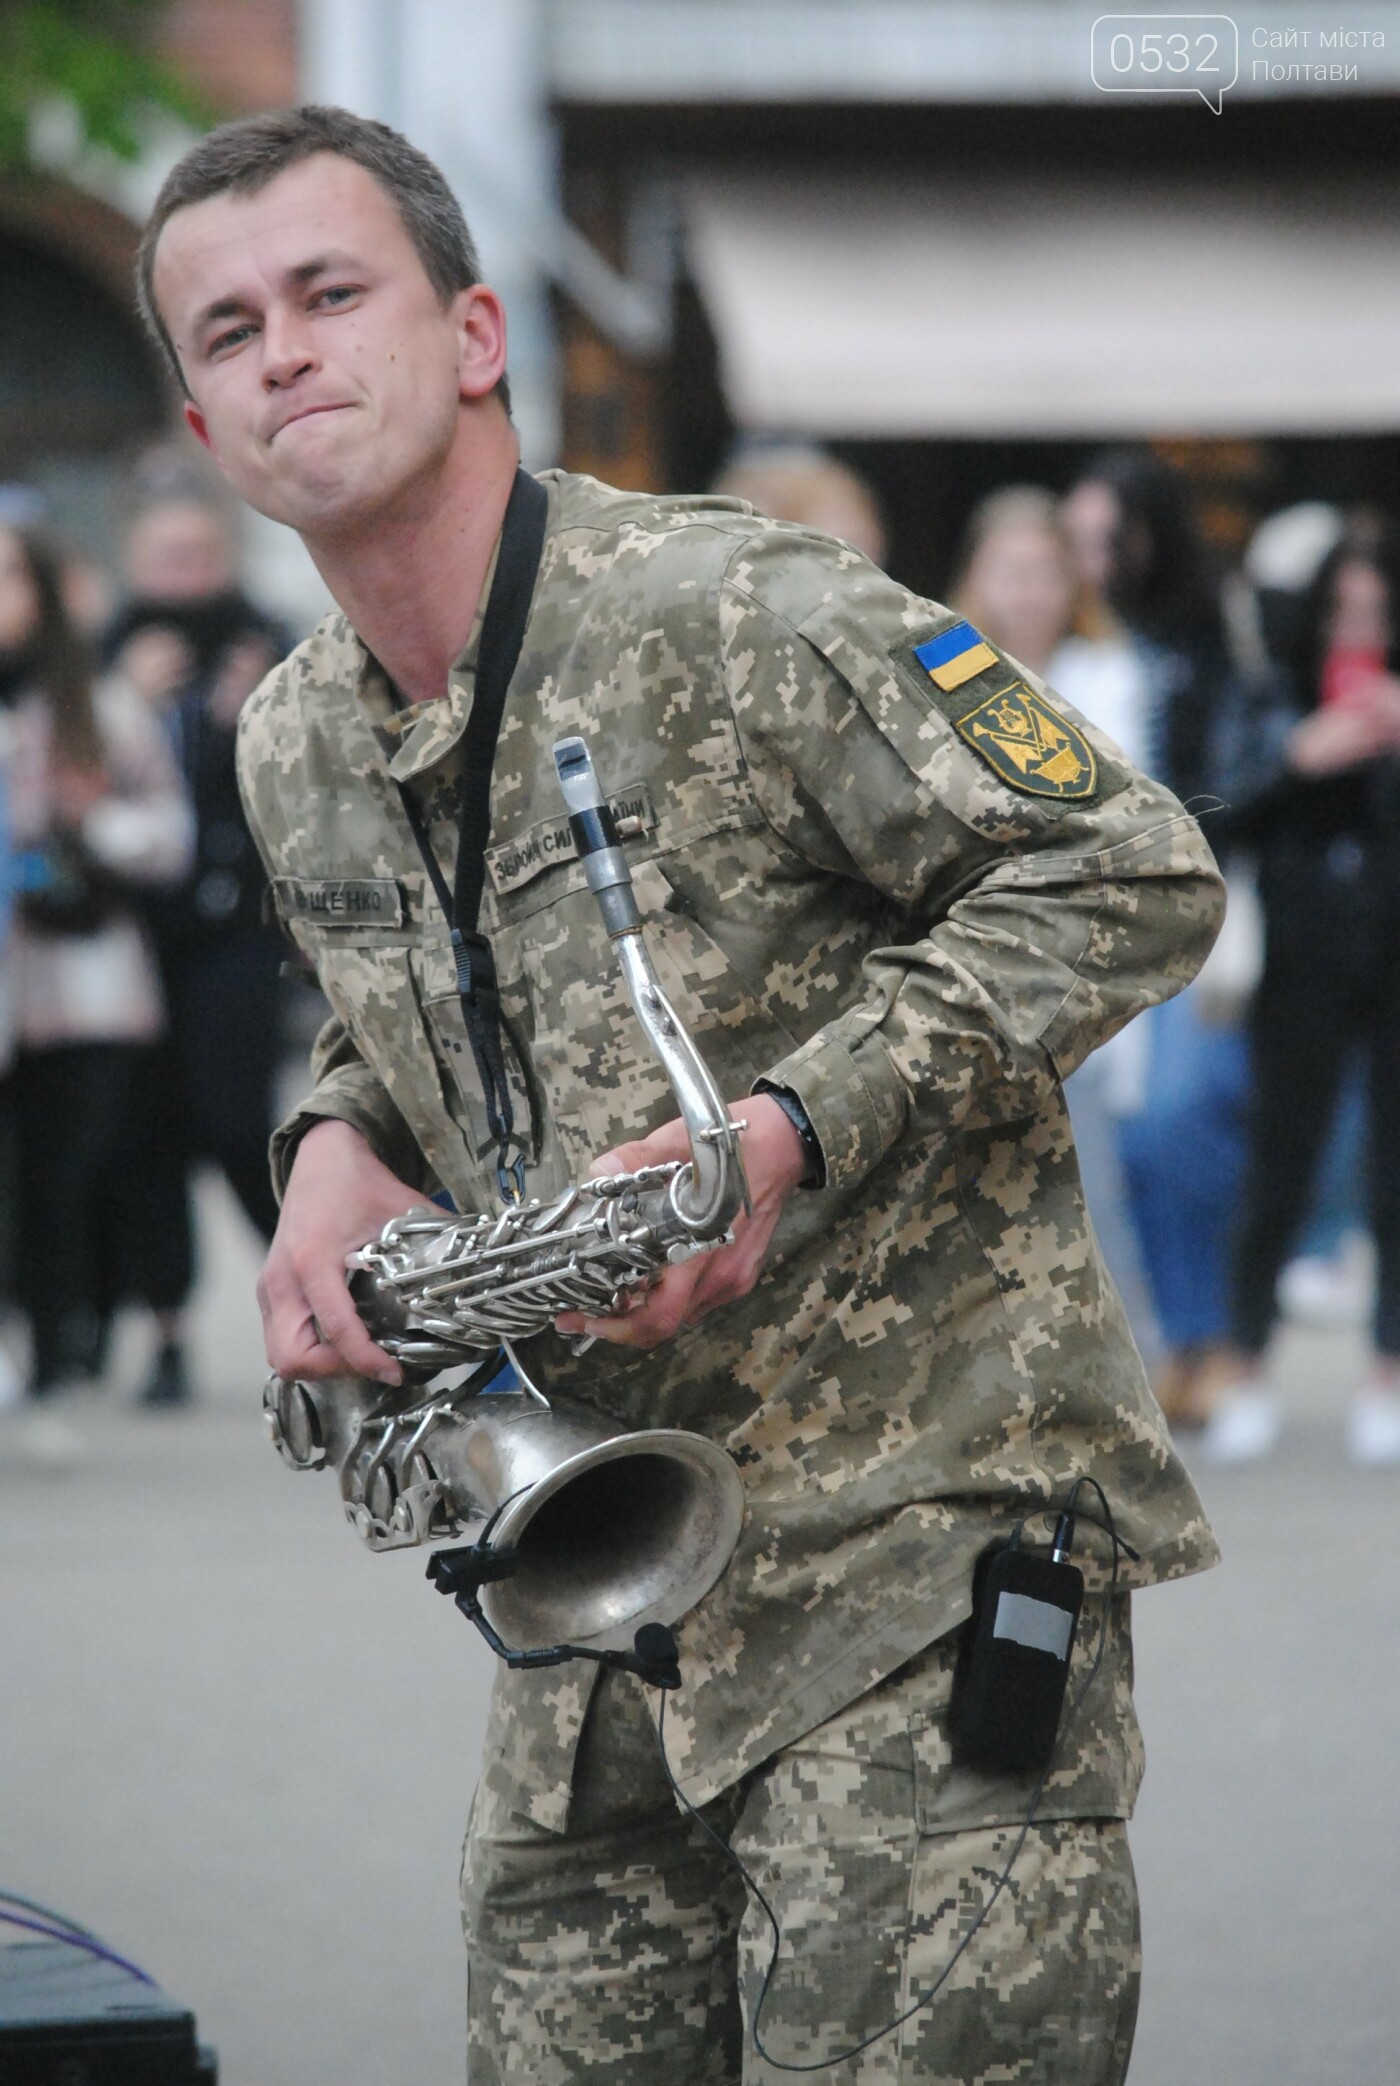 Полтава заспівала «Ой, у лузі червона калина» разом із солістами оркестру Збройних Сил України